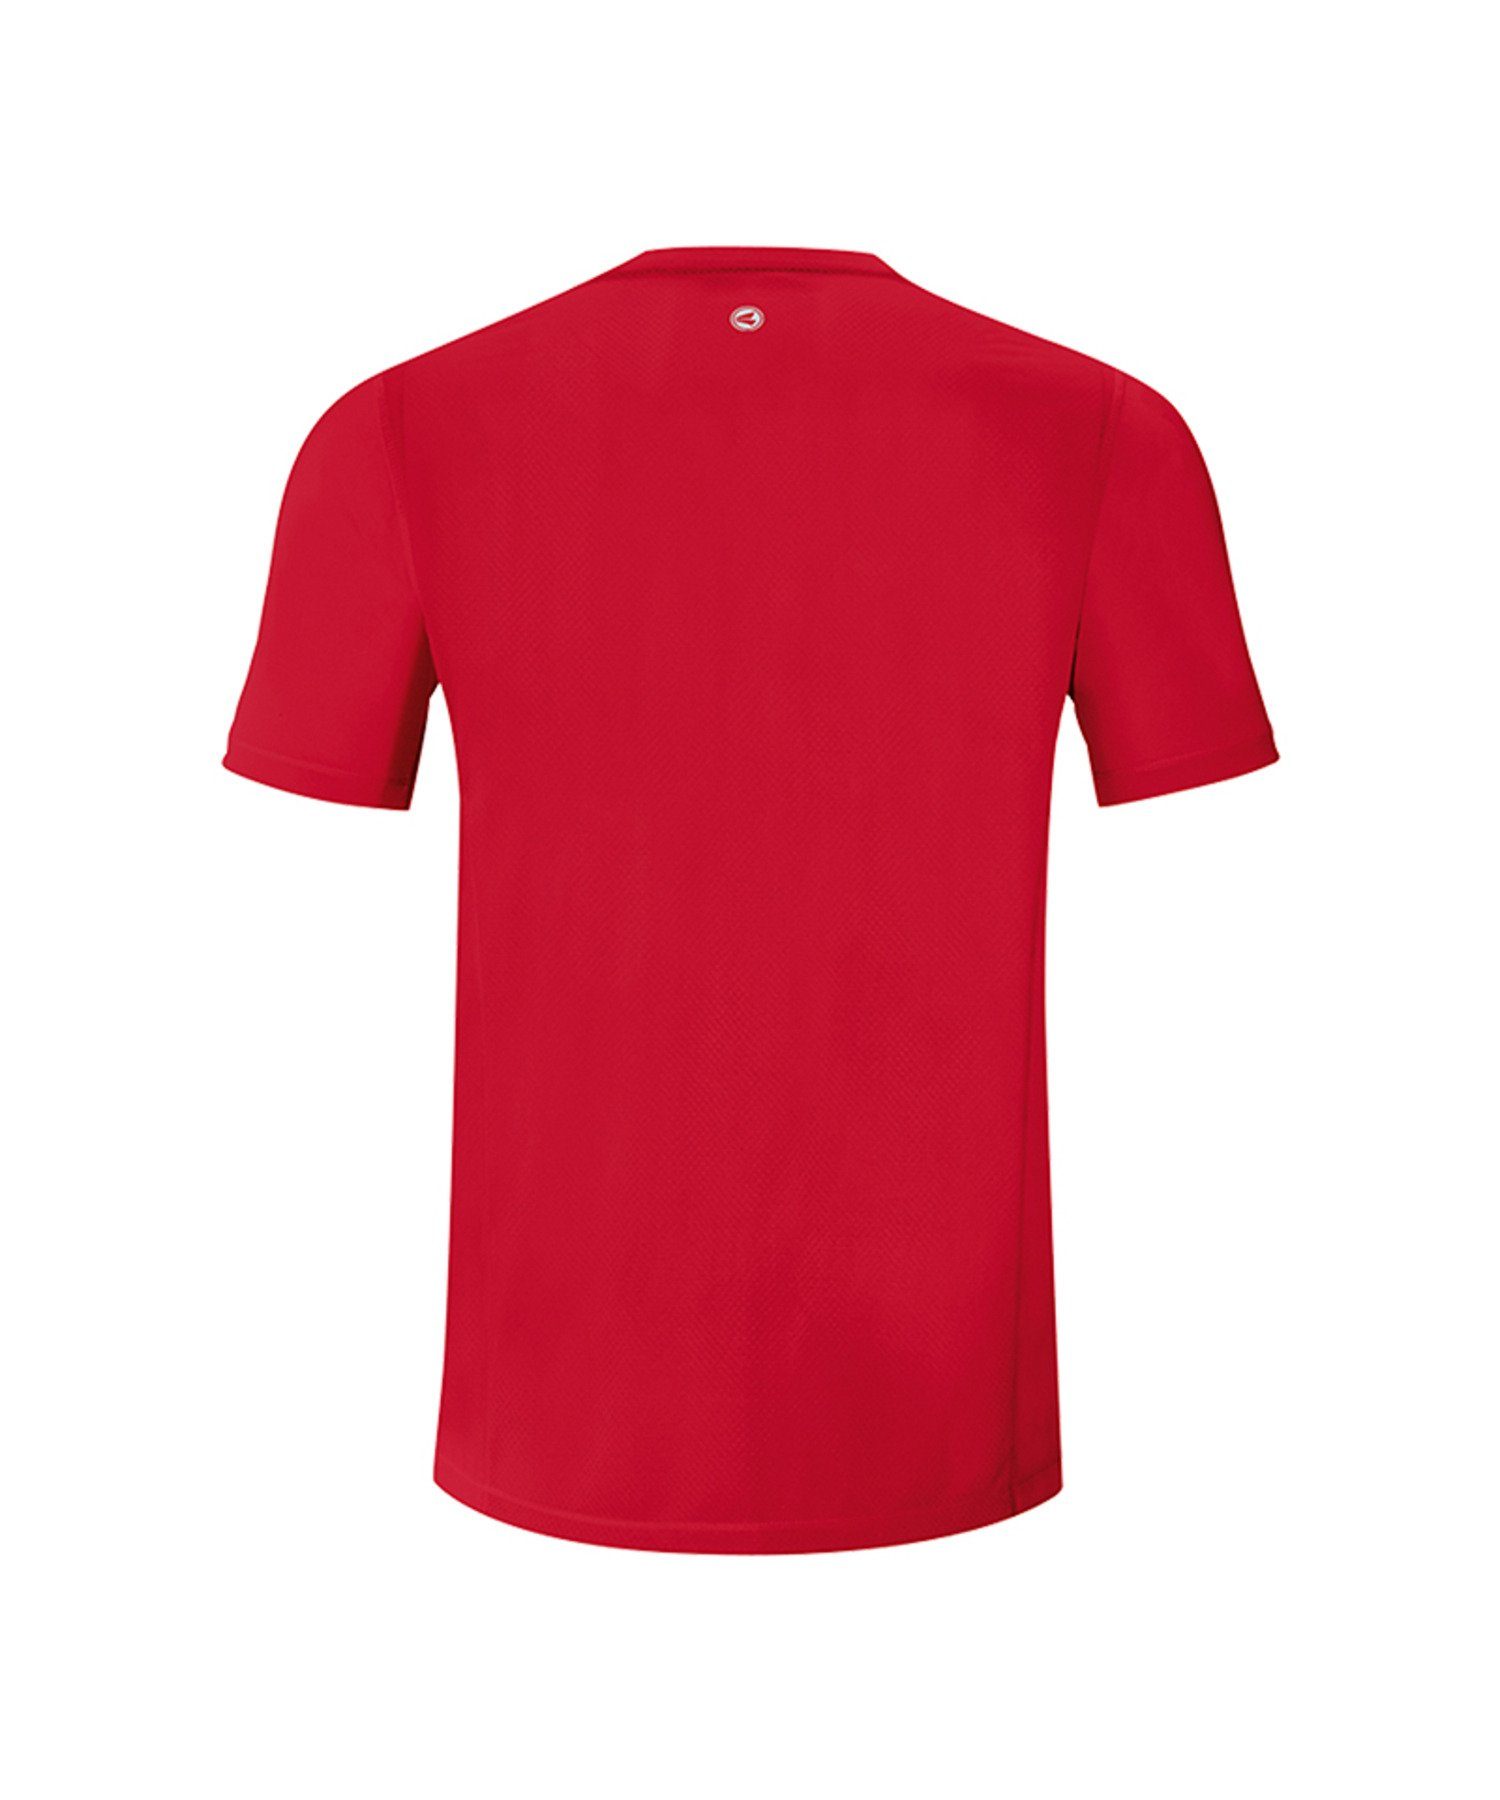 Jako T-Shirt Run 2.0 Running T-Shirt Rot default